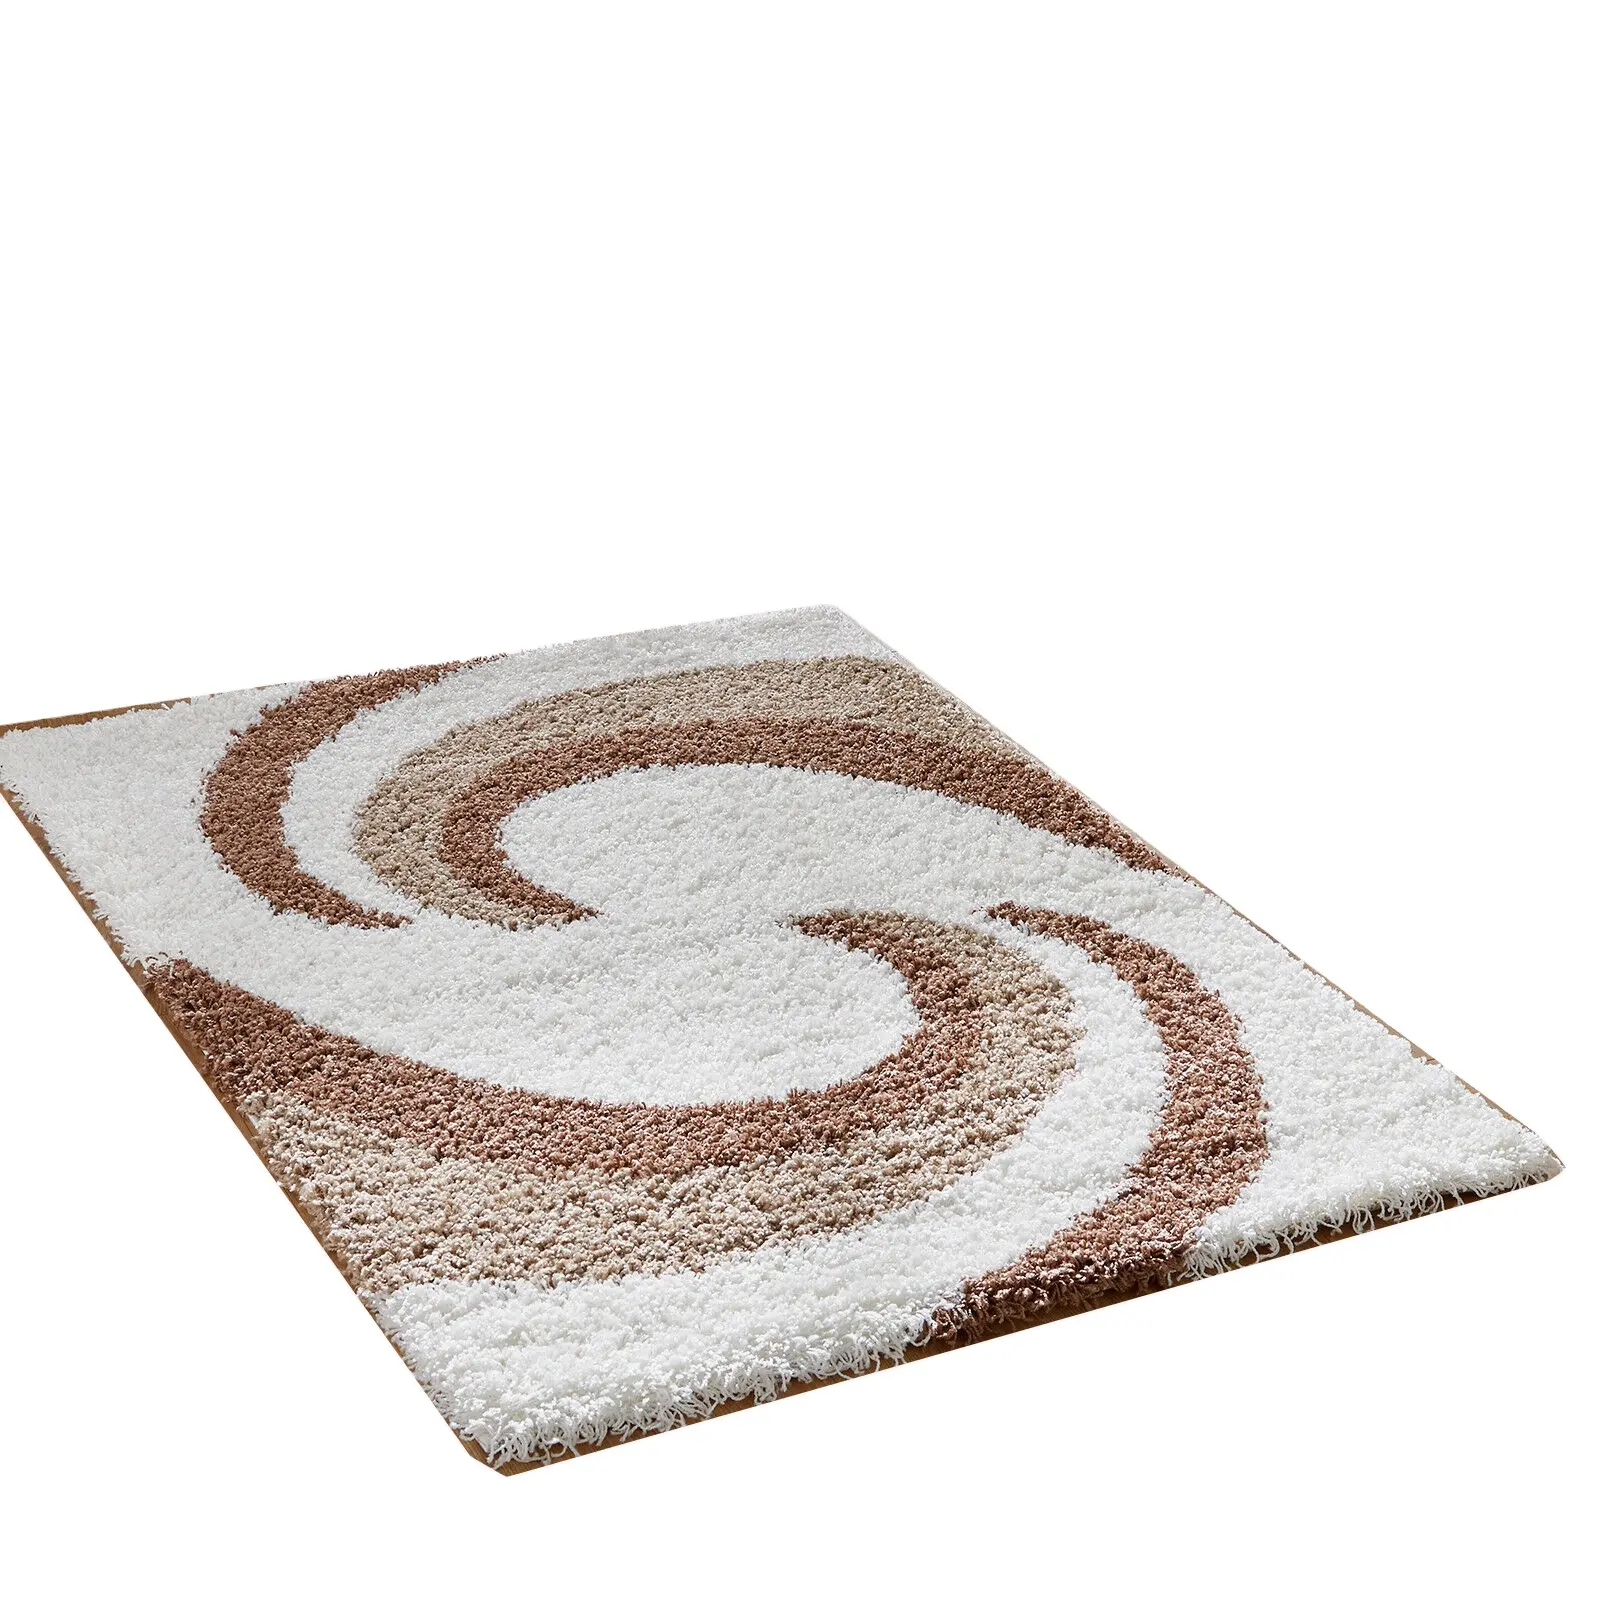 Nuovo design 3D 100% tappeti e tappeti in poliestere tappeti shaggy in poliestere con multi colore per soggiorno